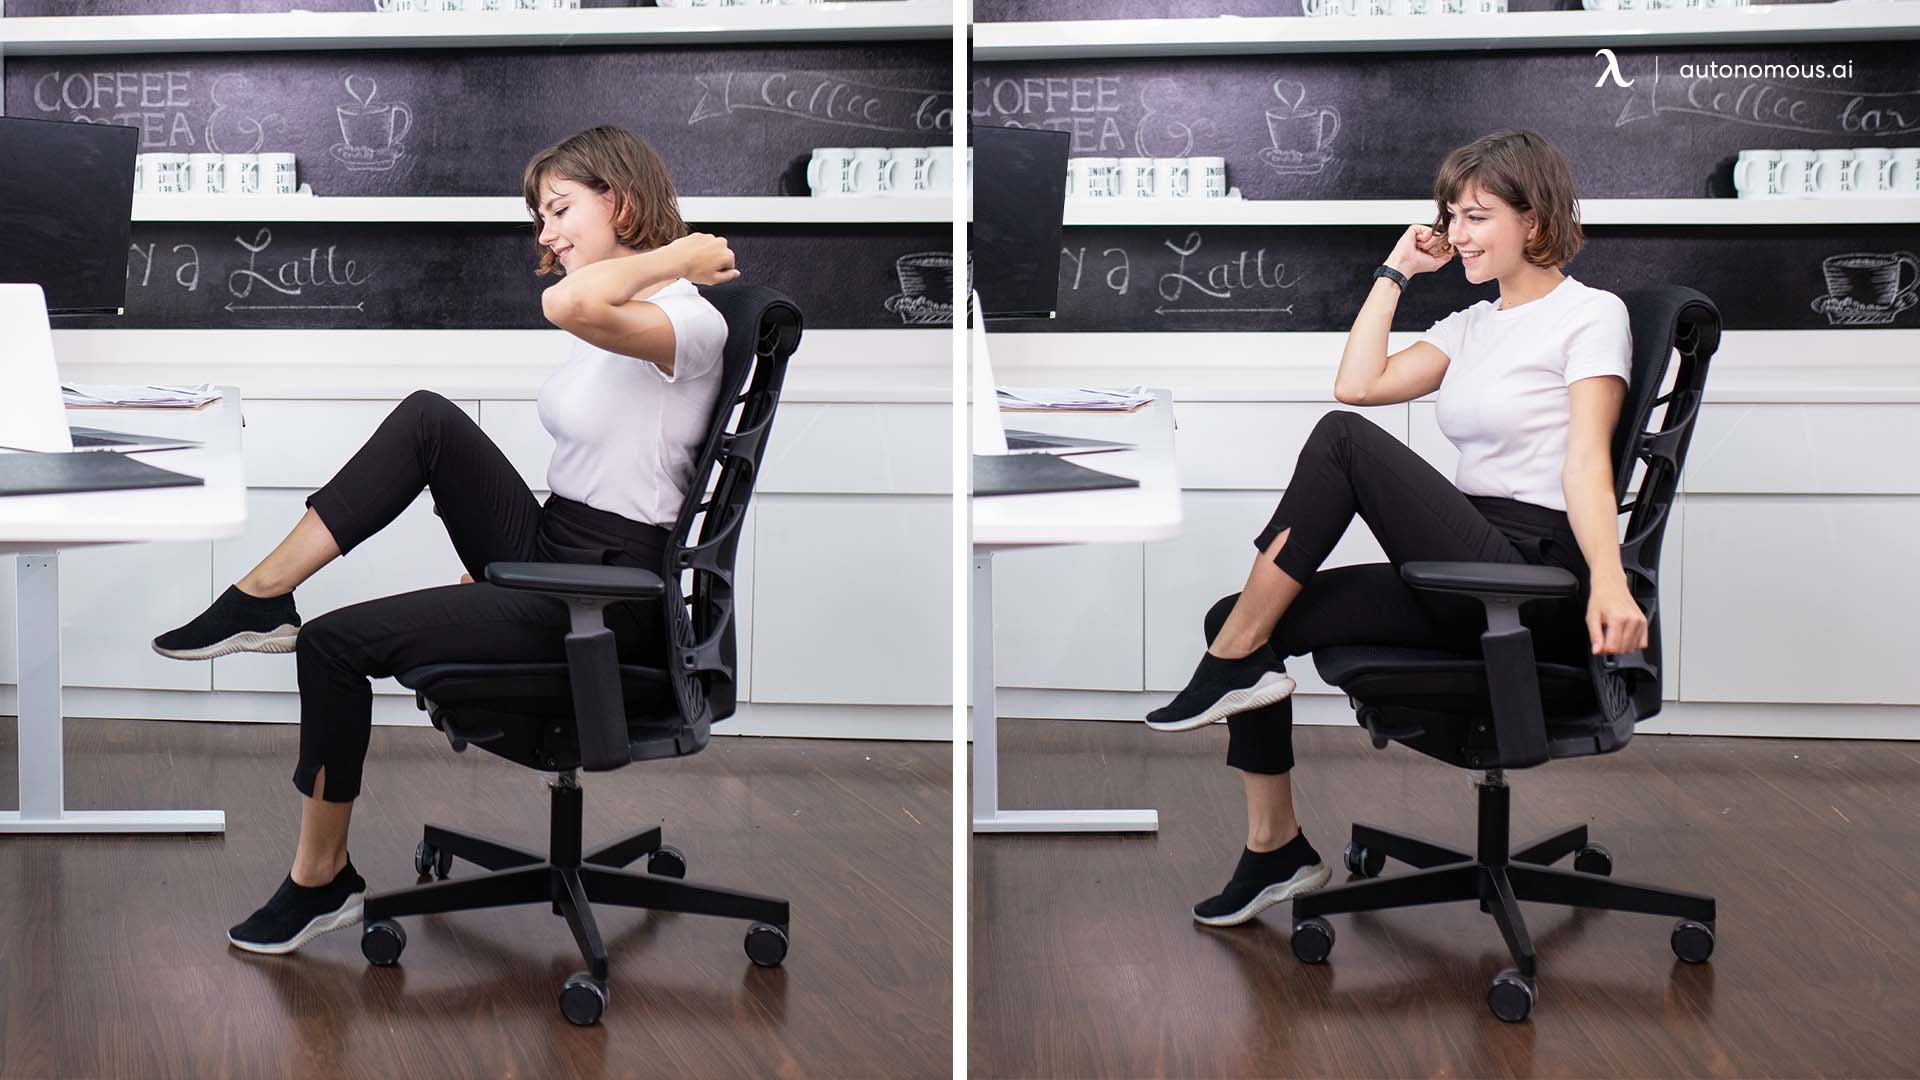 5 bài tập giảm cân cho nàng văn phòng hay ngồi nhiều, giúp eo thon nhỏ - Ảnh 2.